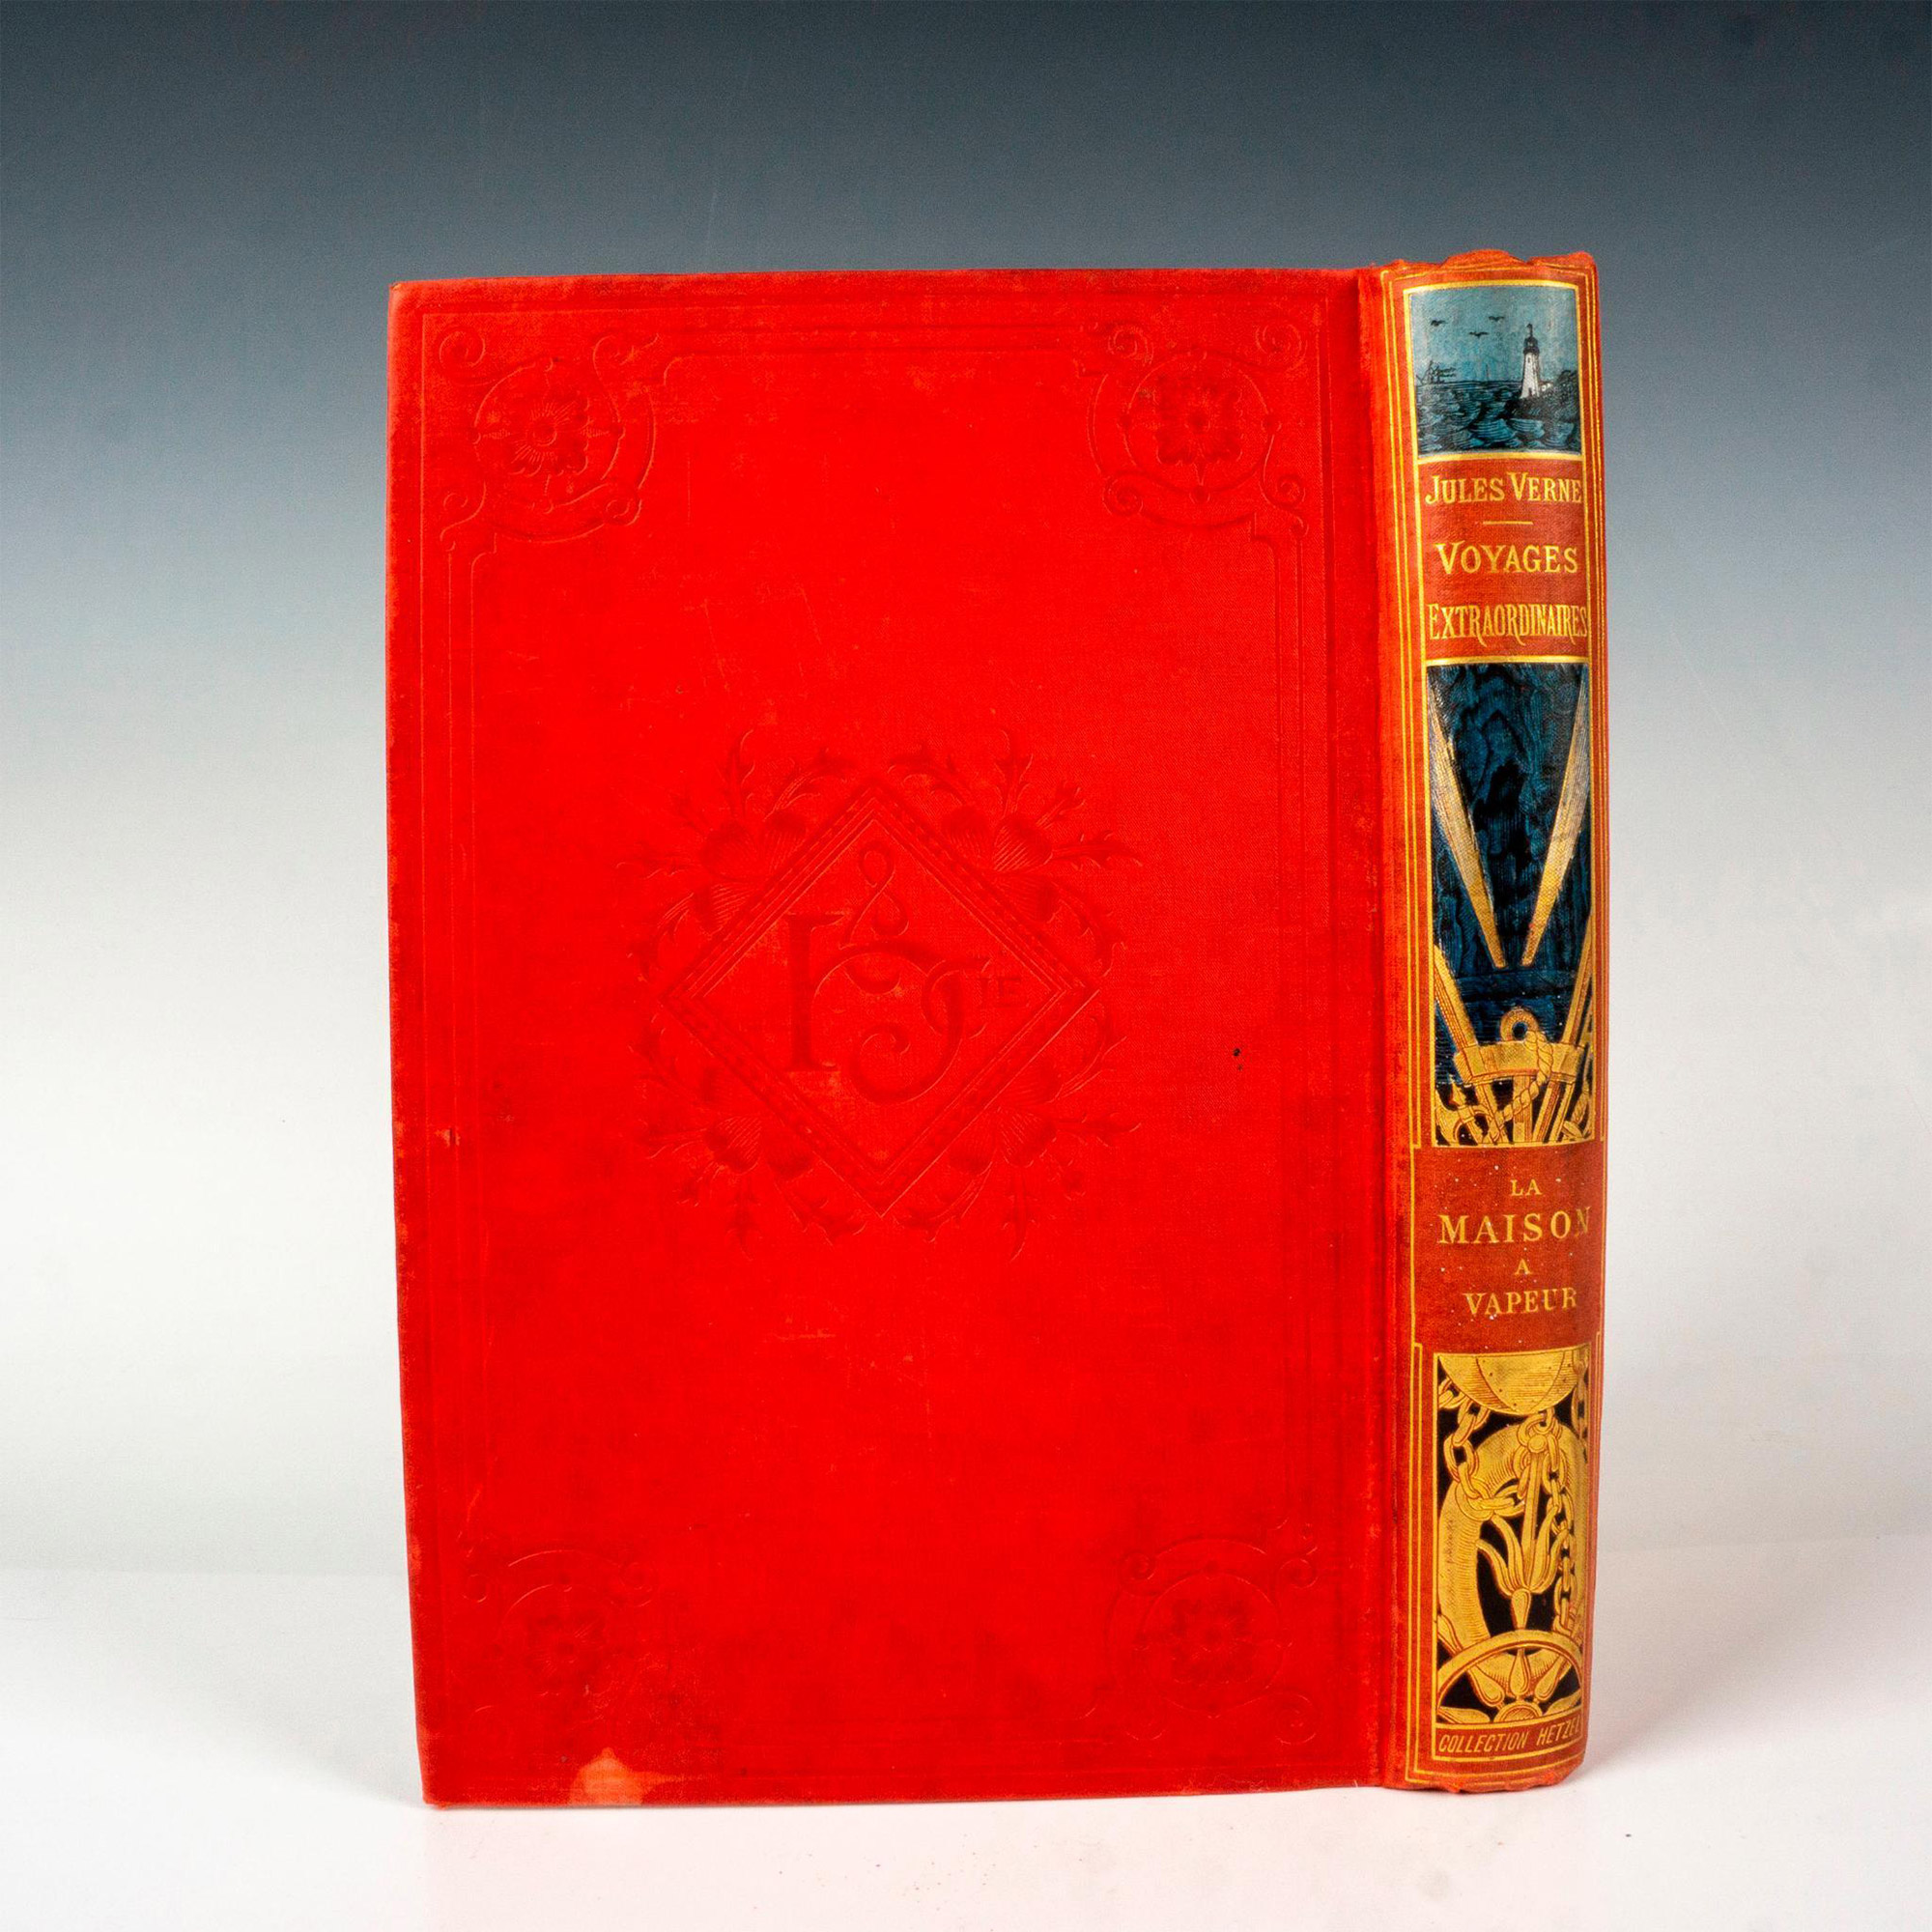 Jules Verne, La Maison a Vapeur, A Un Elephant, Red Cover - Image 3 of 3